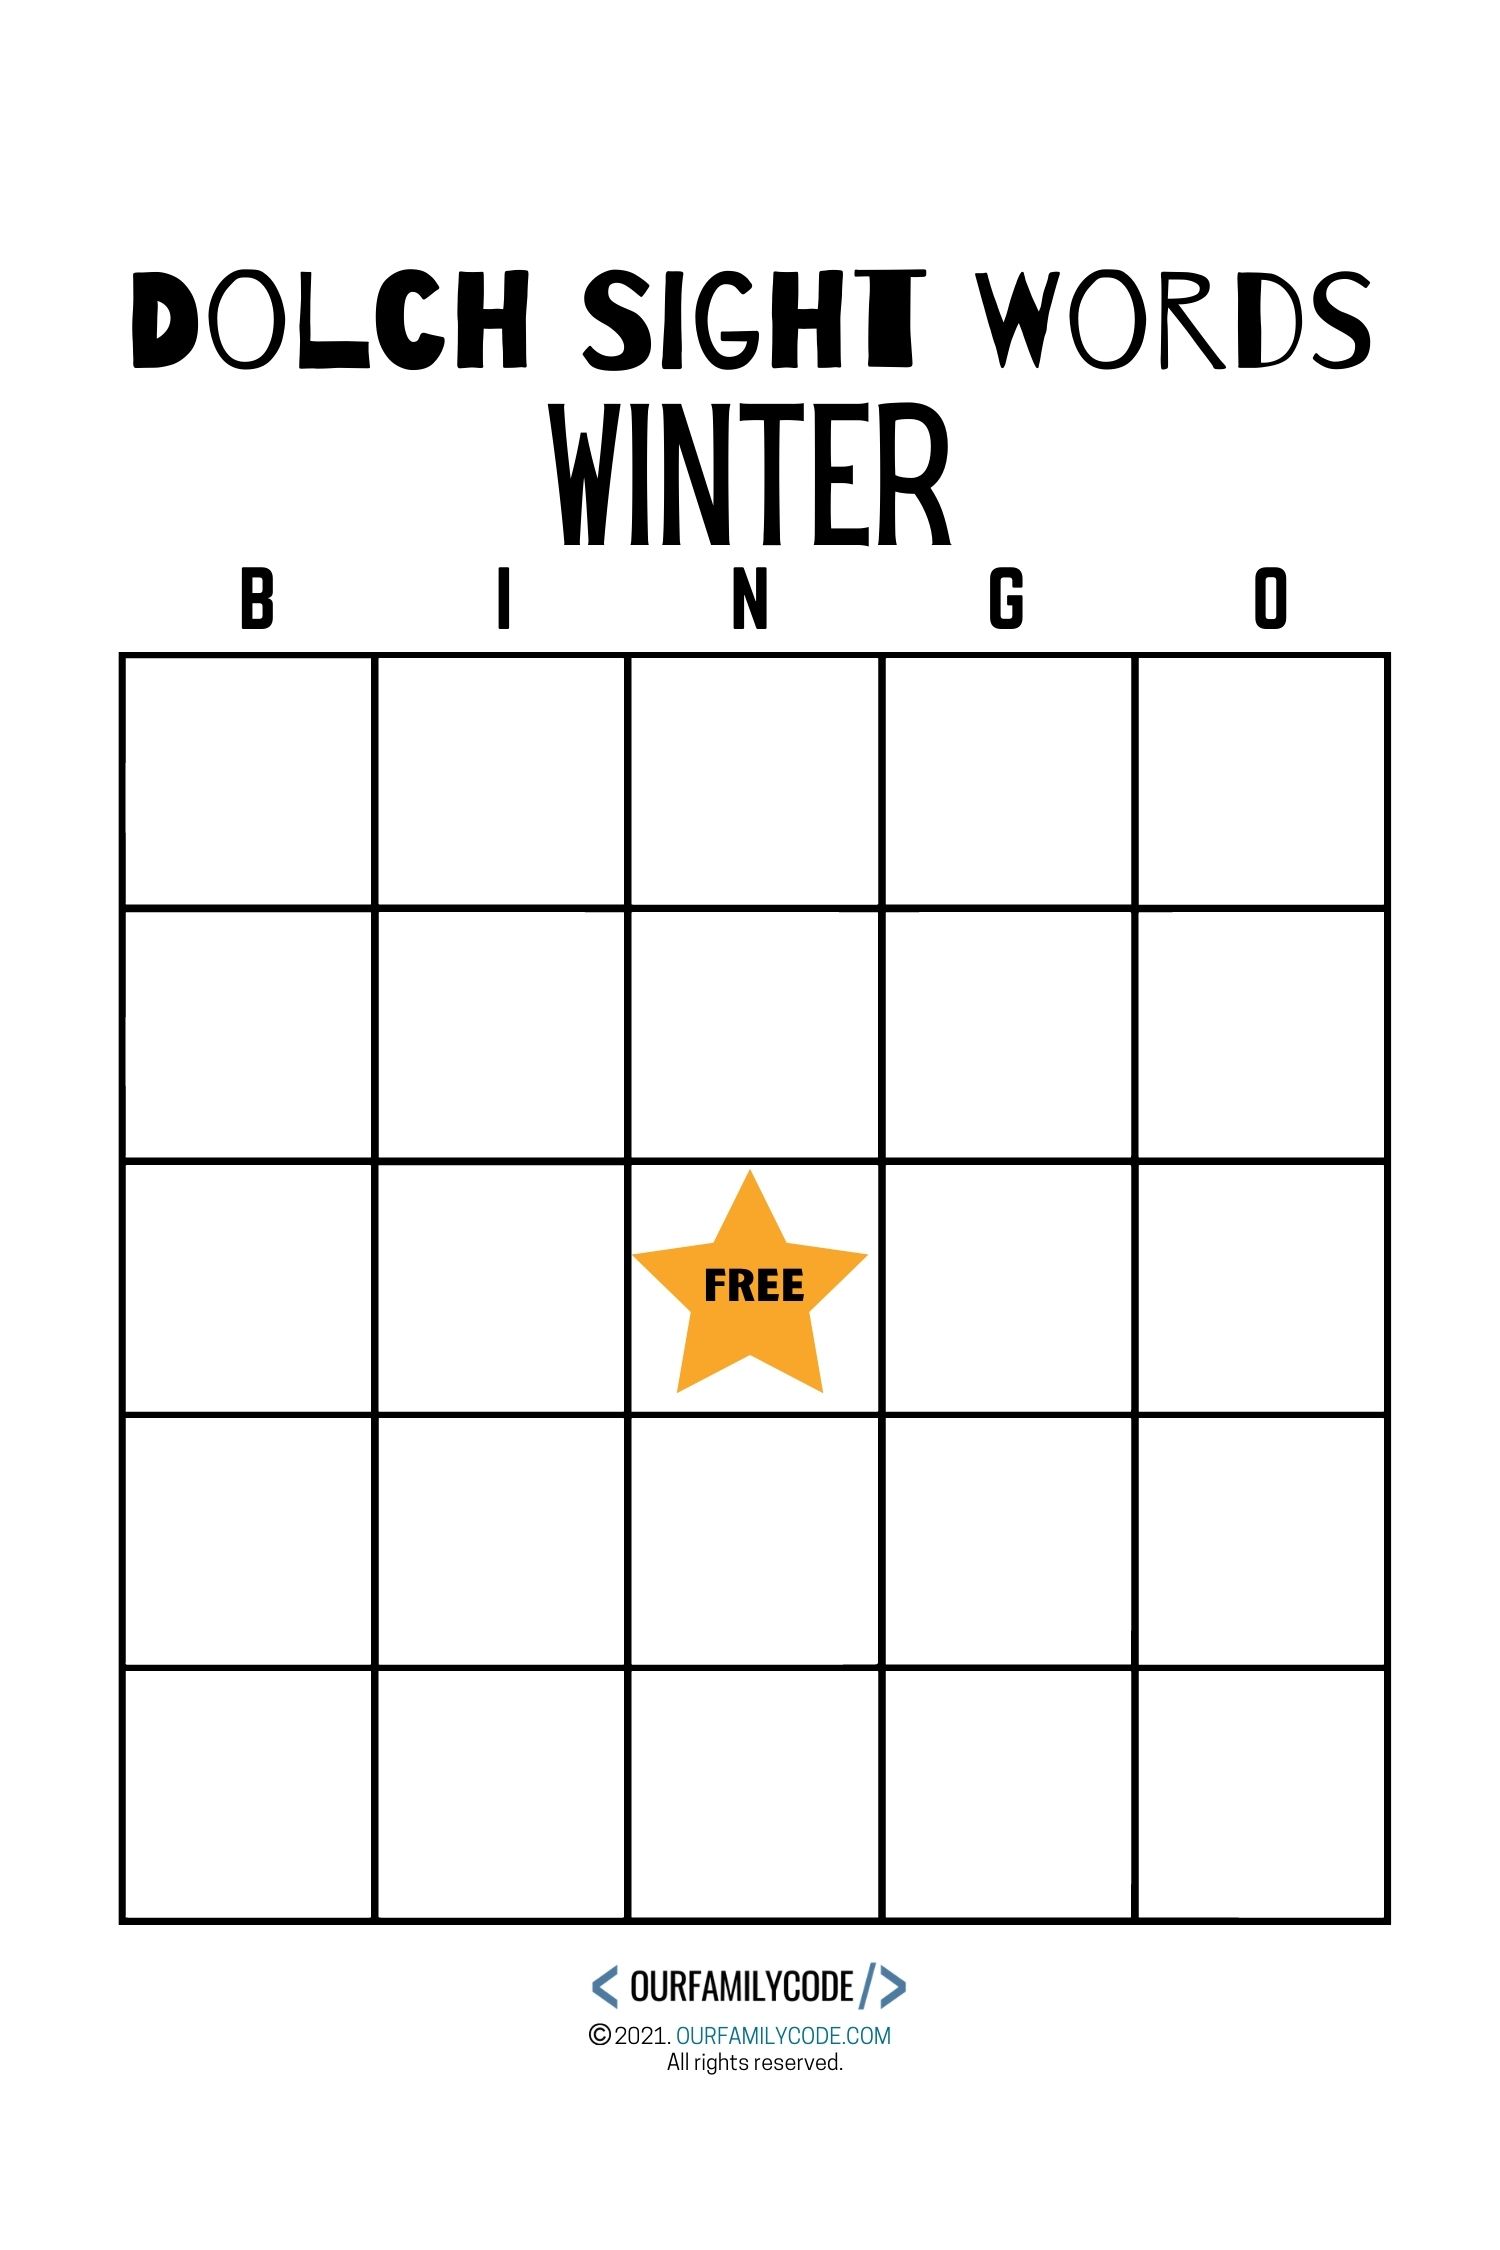 dolch sight word blank bingo board